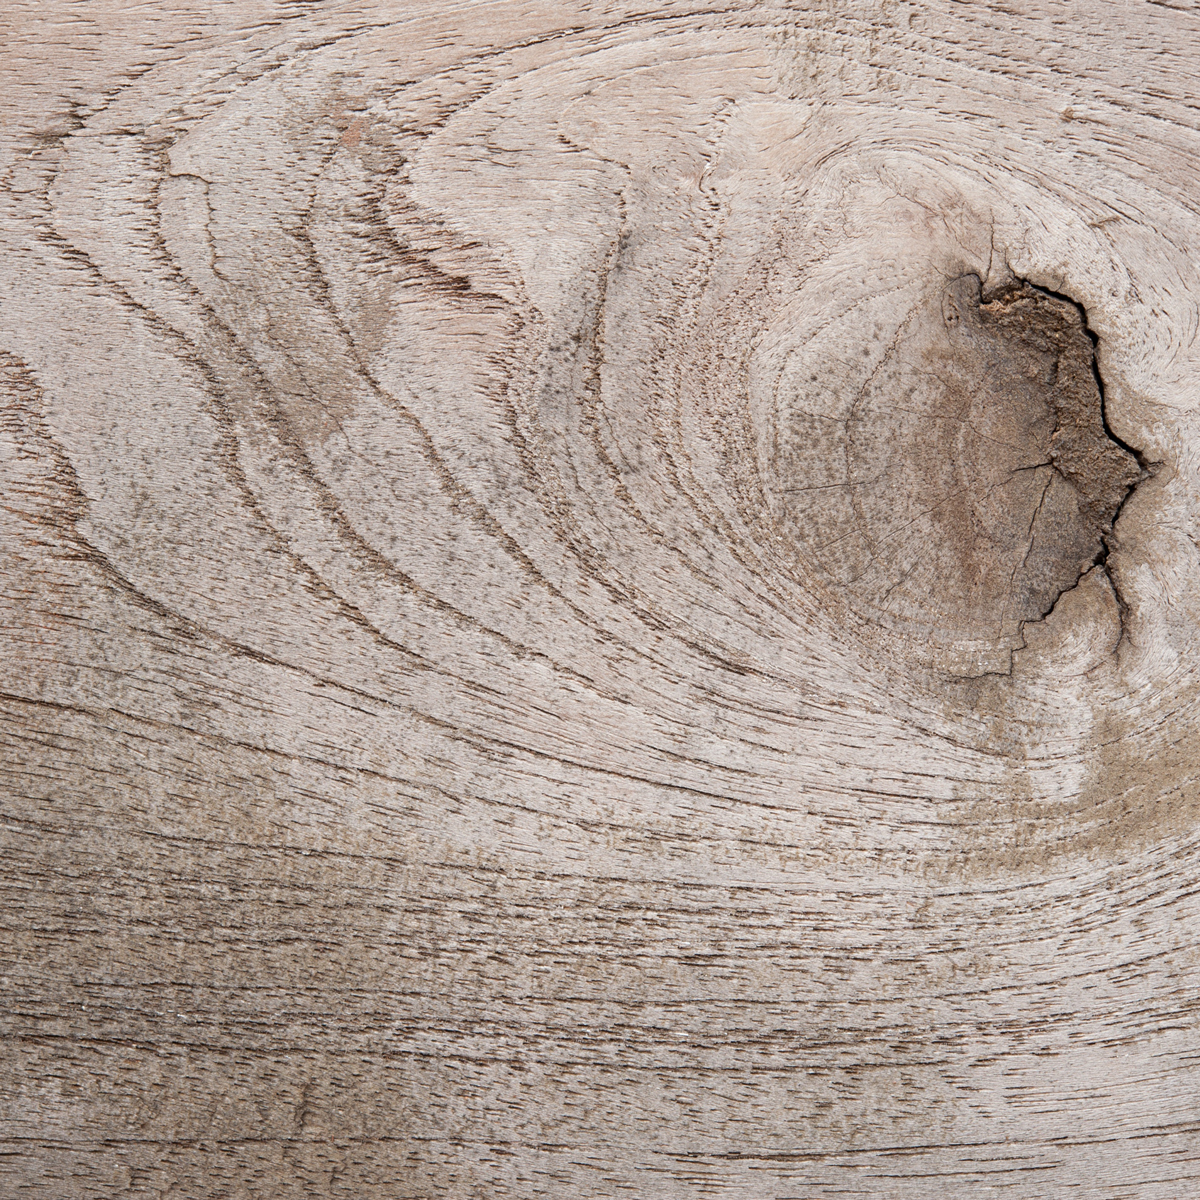 Du bois avec un motif circulaire